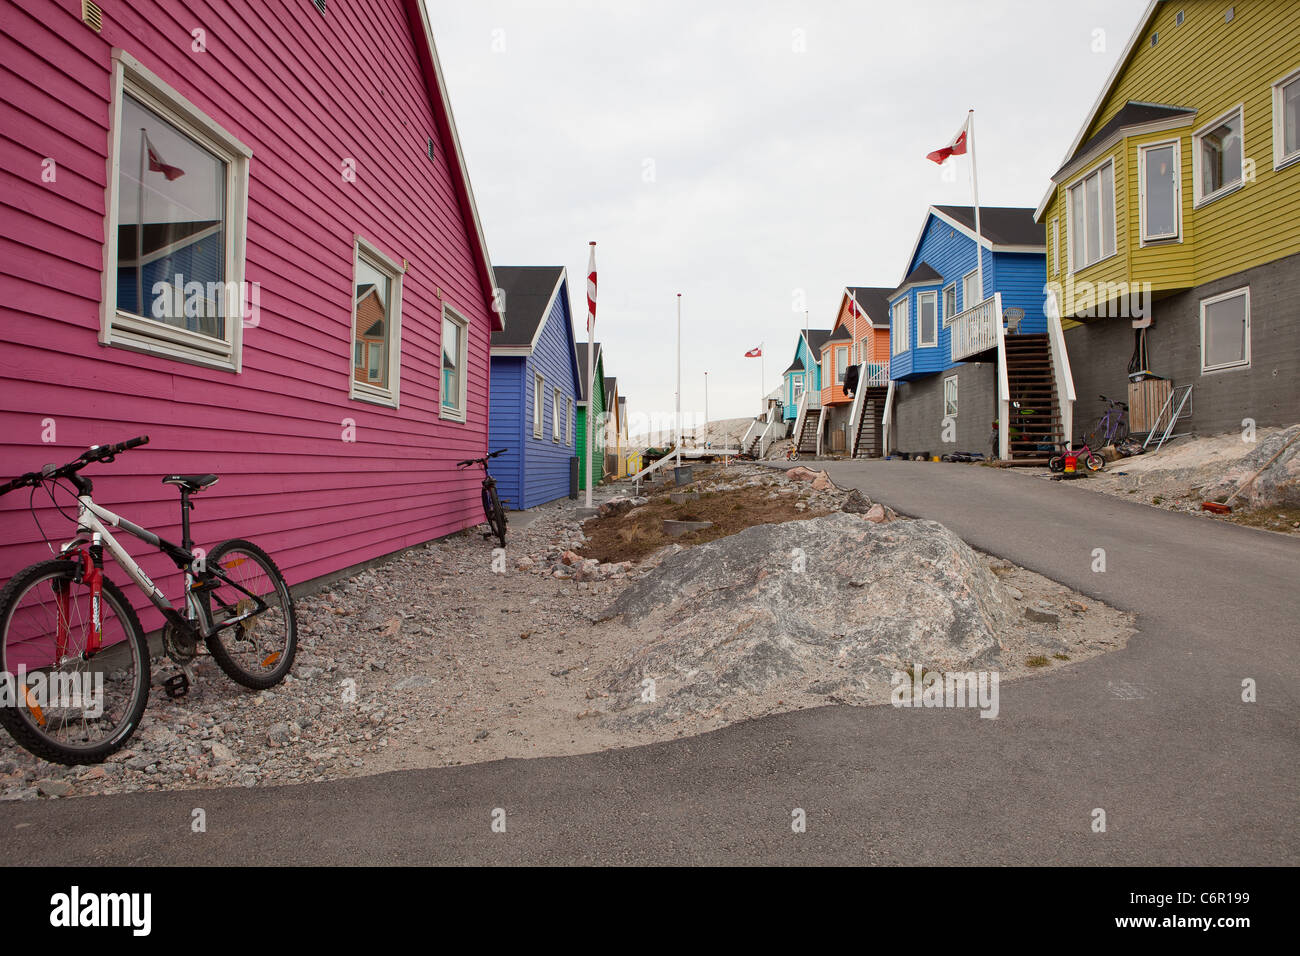 Maisons colorées à Ilulissat, sur la côte ouest du Groenland Banque D'Images